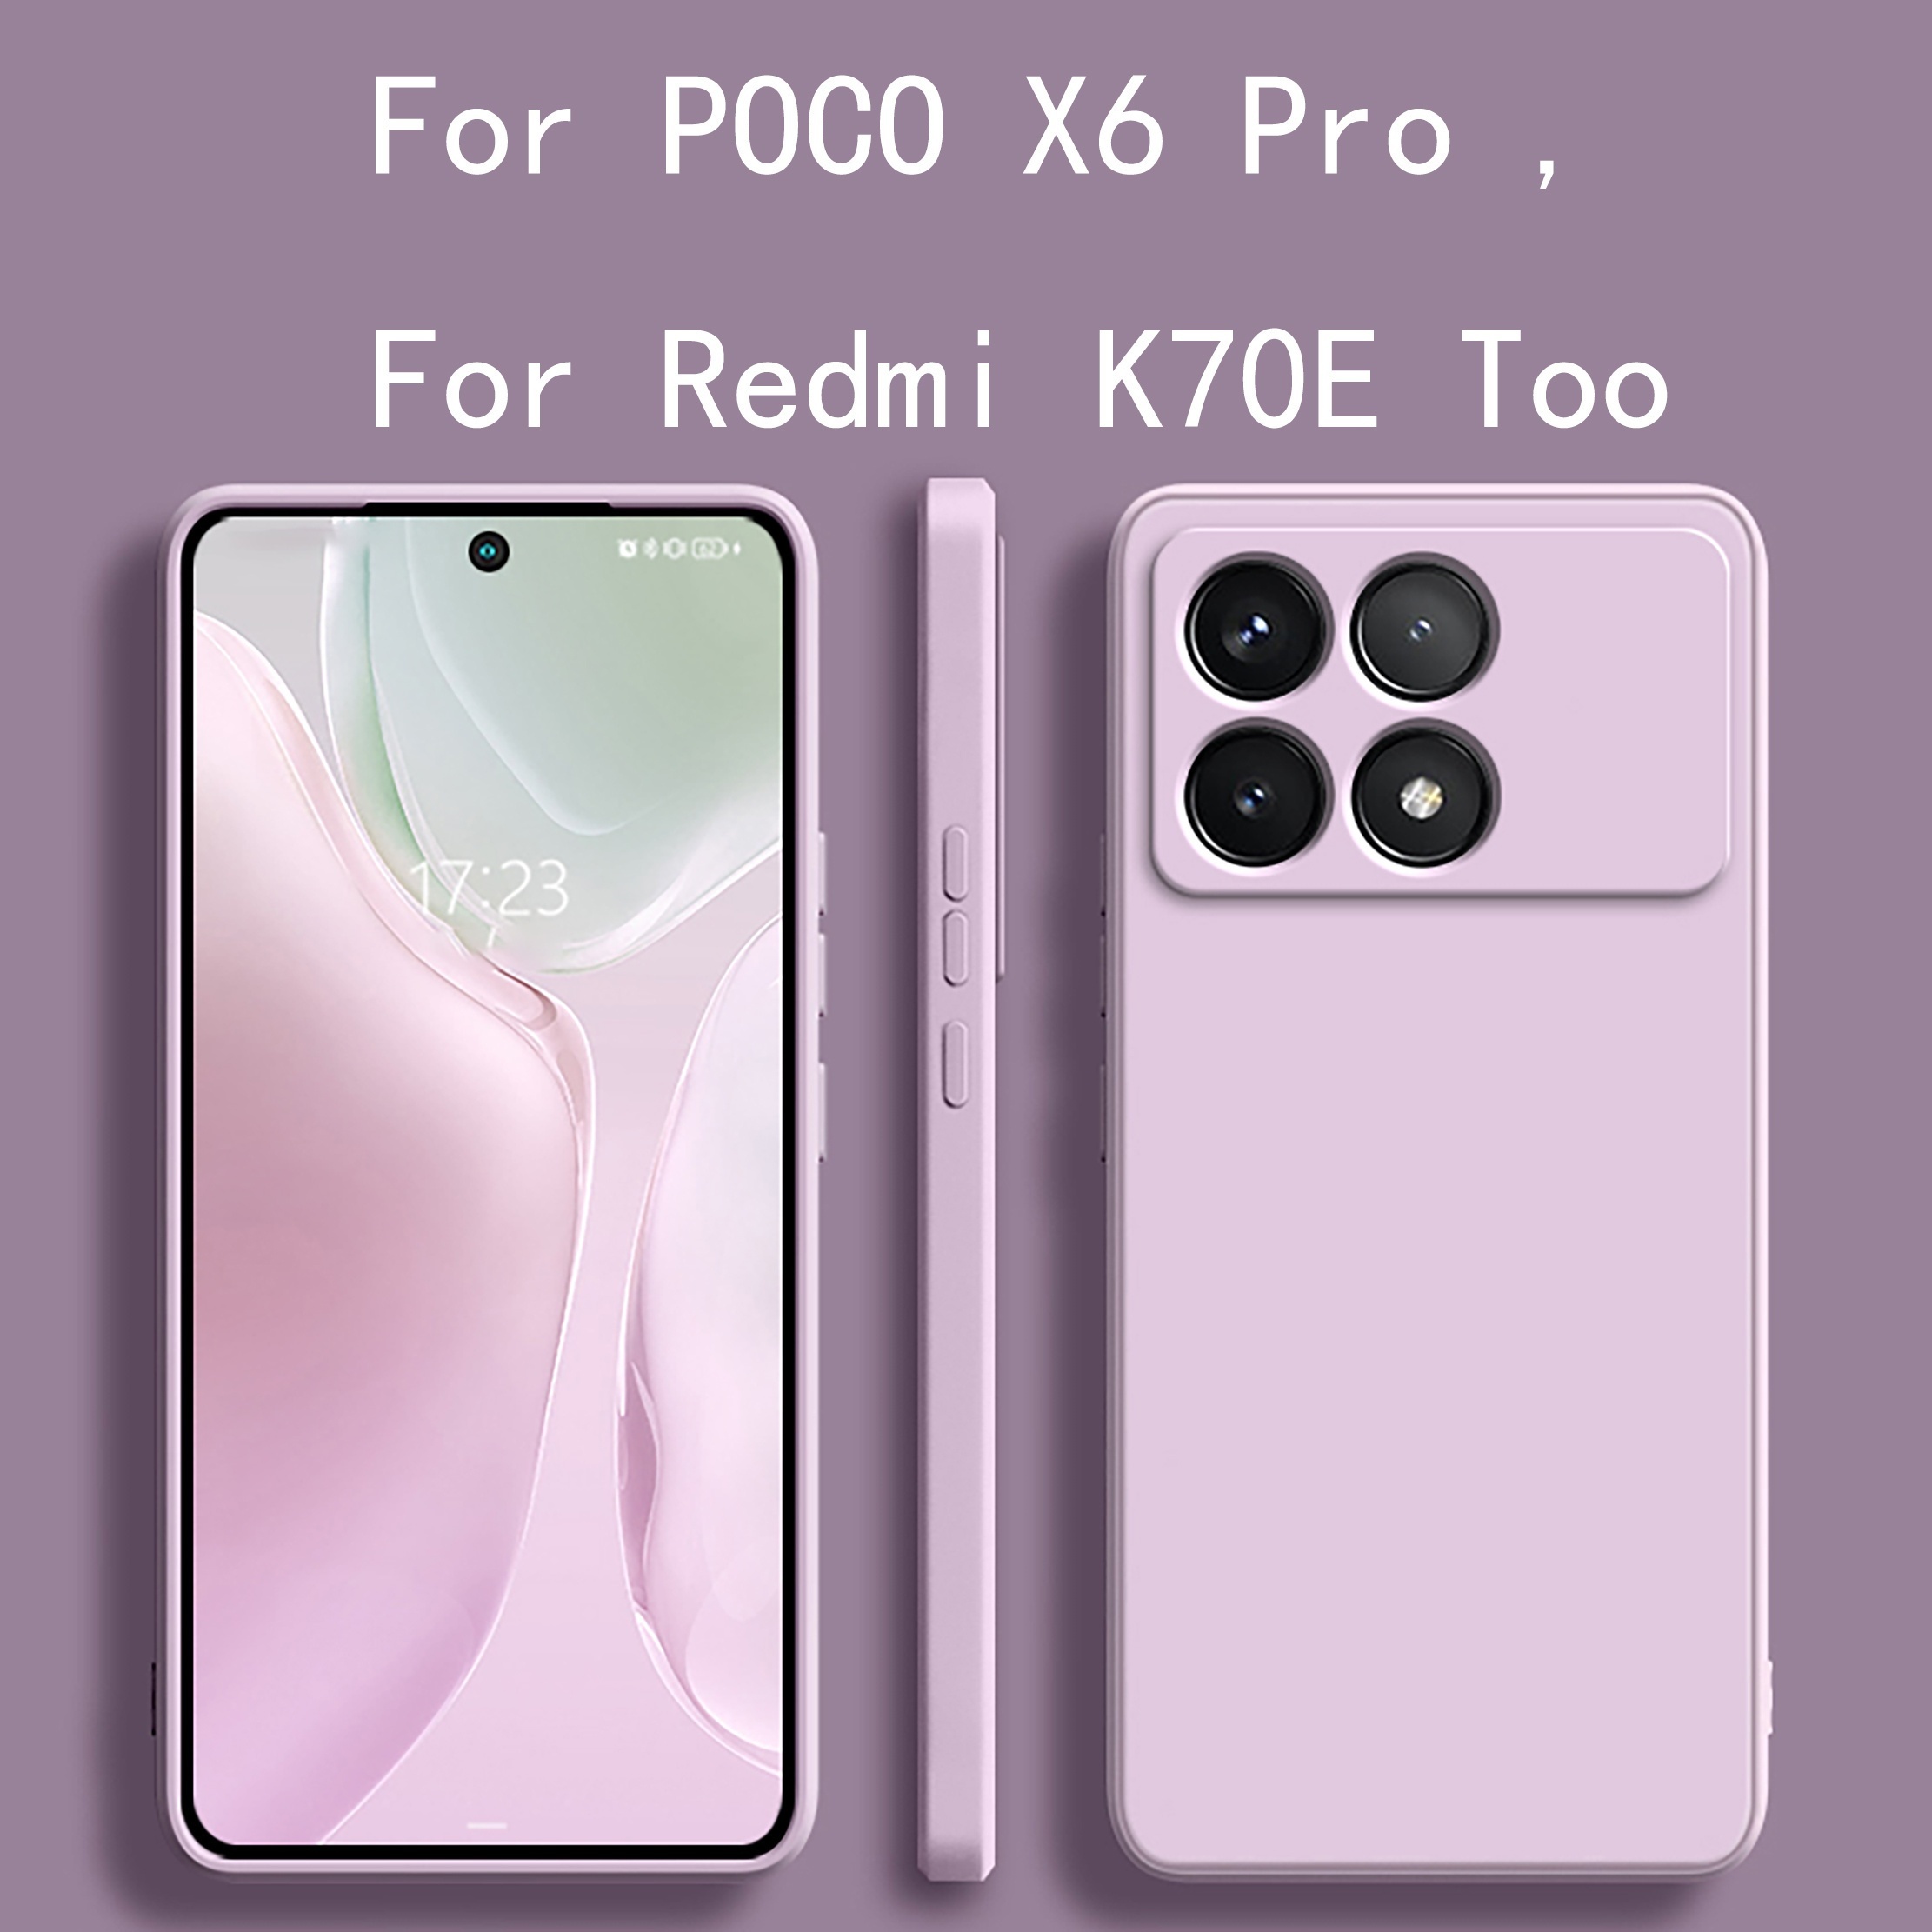 POCO X6 Pro - Xiaomi France